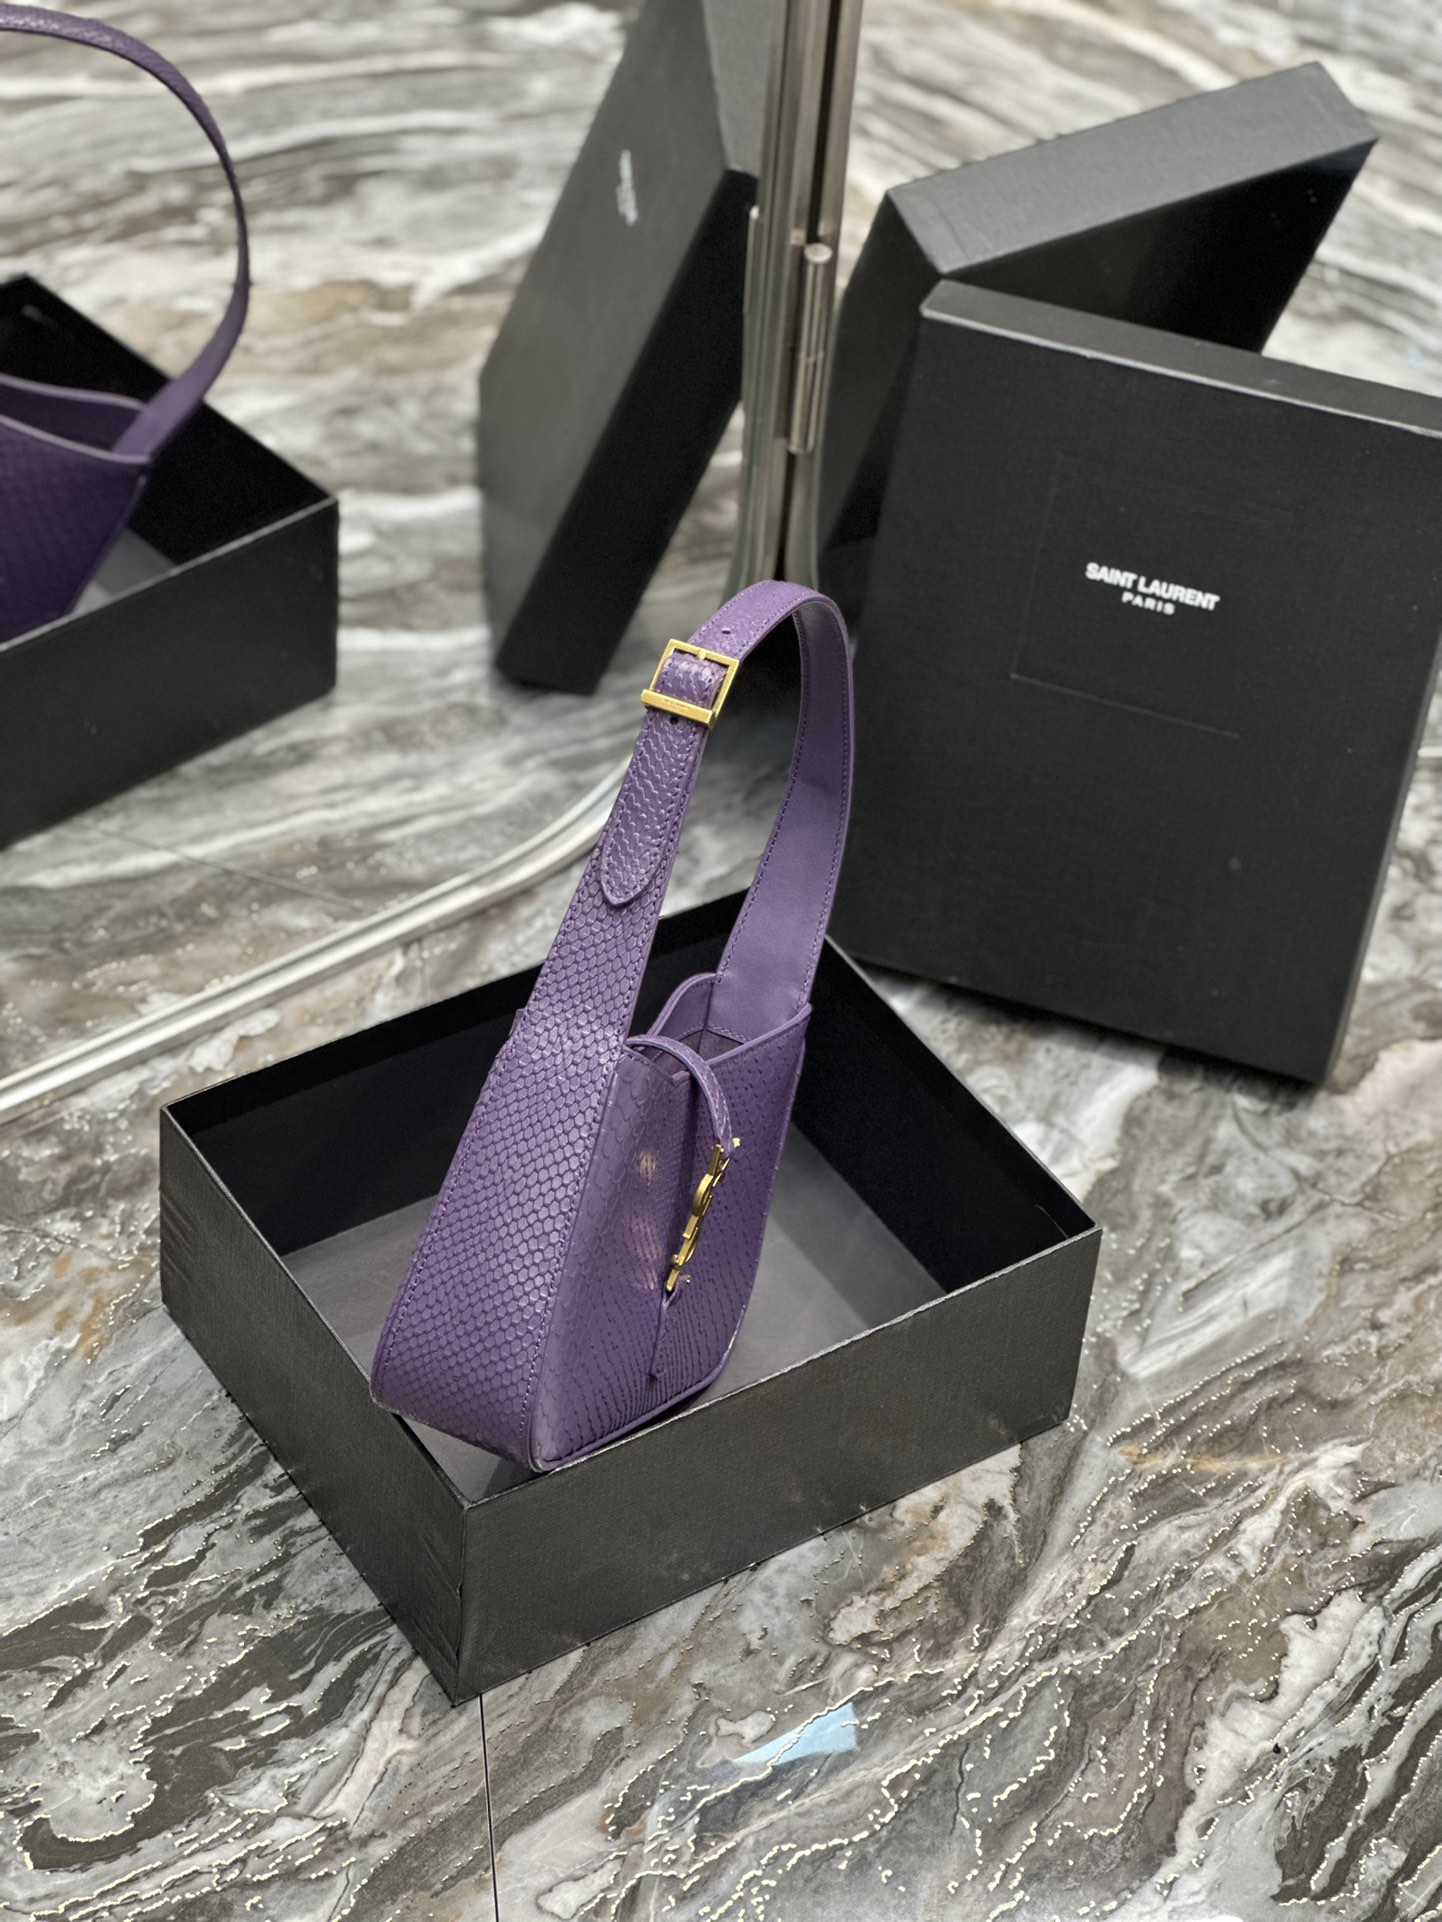 原厂皮紫色蛇纹牛皮_腋下包Le5A7Bag强推️今年的宝藏包包之一！极简外形+金属logo扣开合设计可调